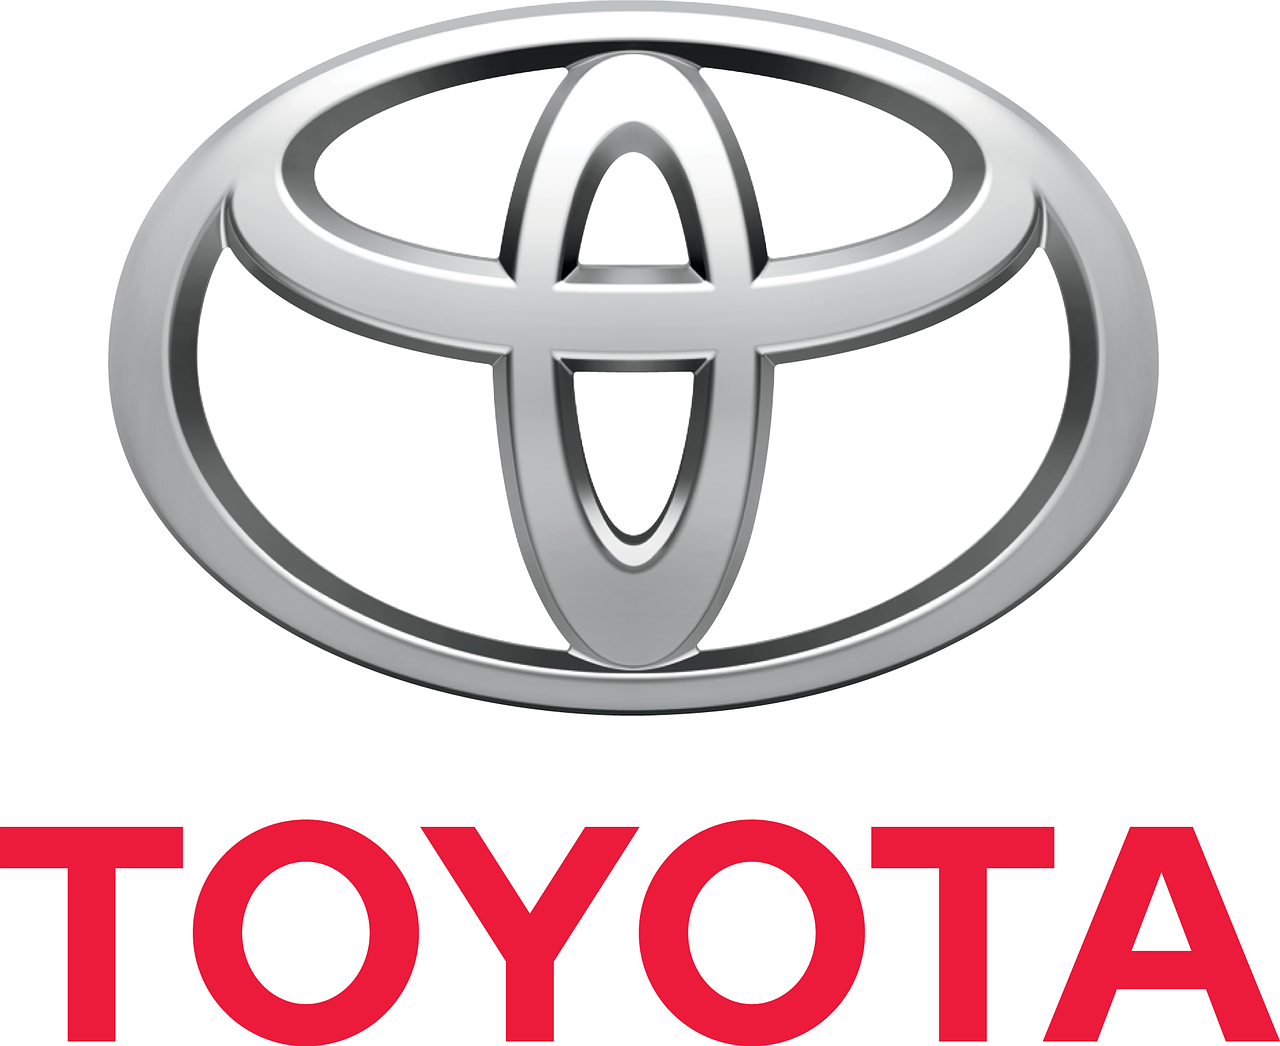 Σαν σήμερα το 1938 ιδρύεται η Toyota Motor Co